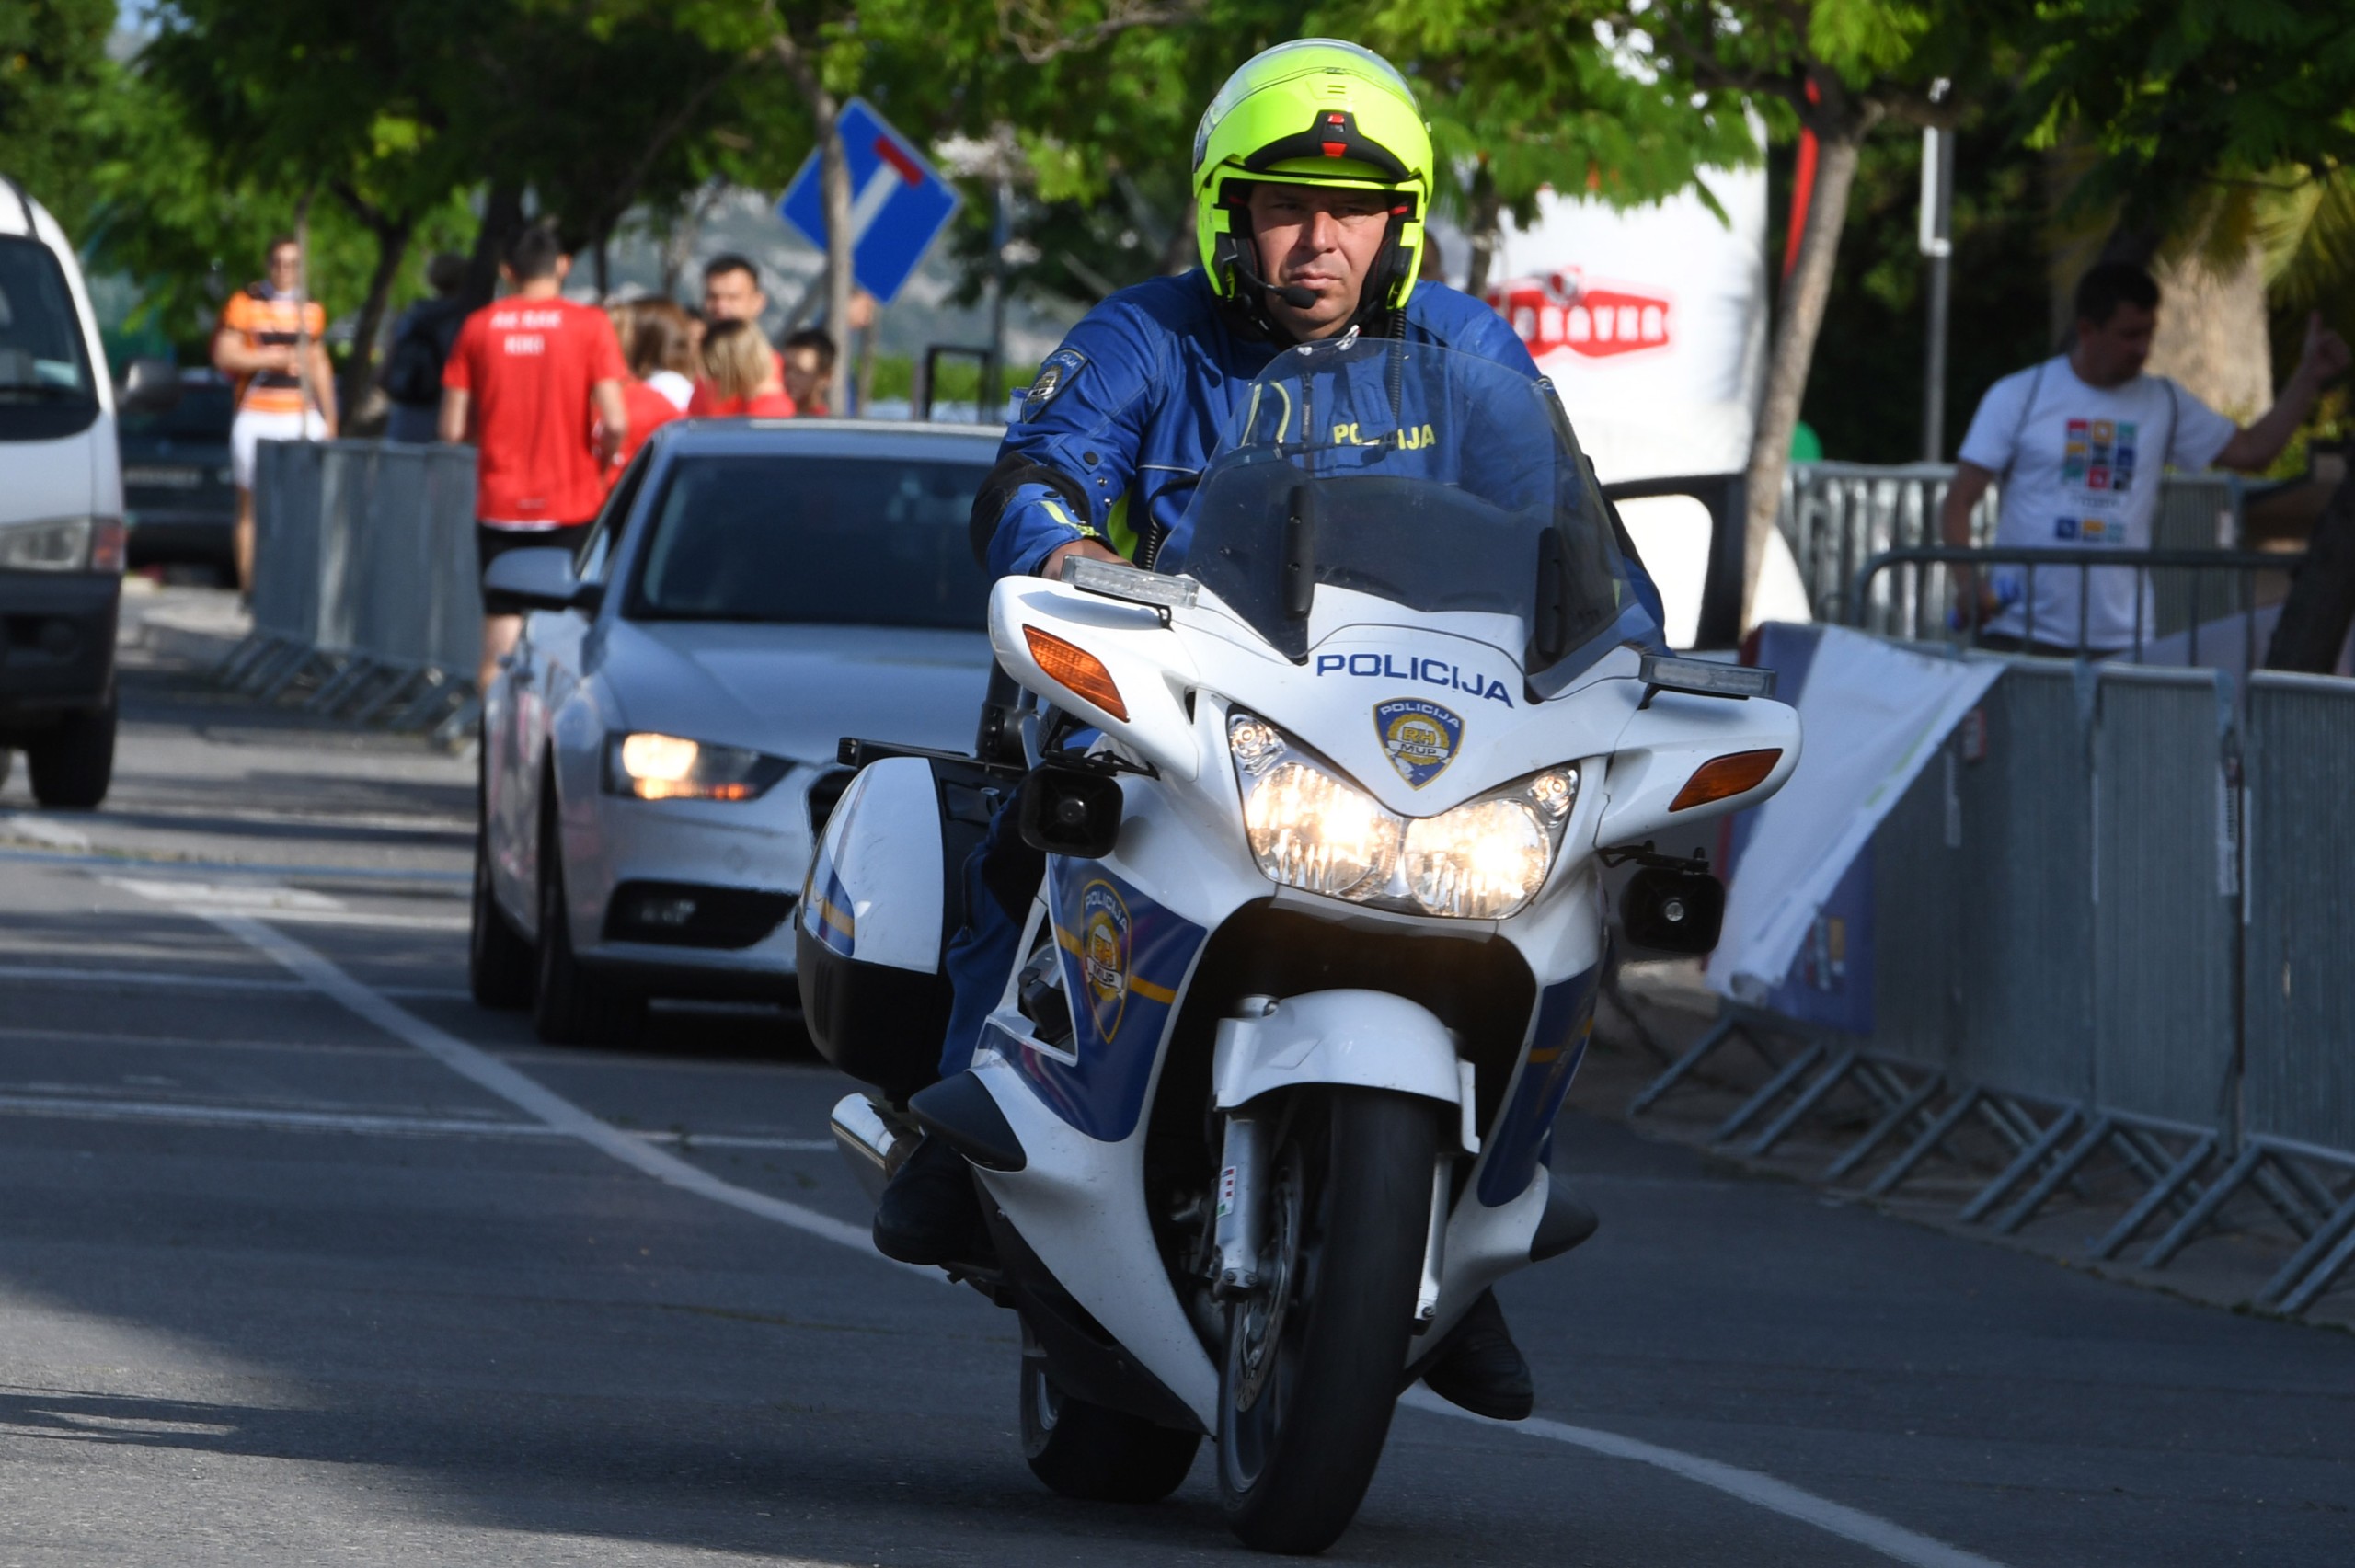 29.05.2022., Sibenik - Dolaskom ljepsih vremena broj policijskih sluzbenika na motociklima sve je veci. Photo: Hrvoje Jelavic/PIXSELL